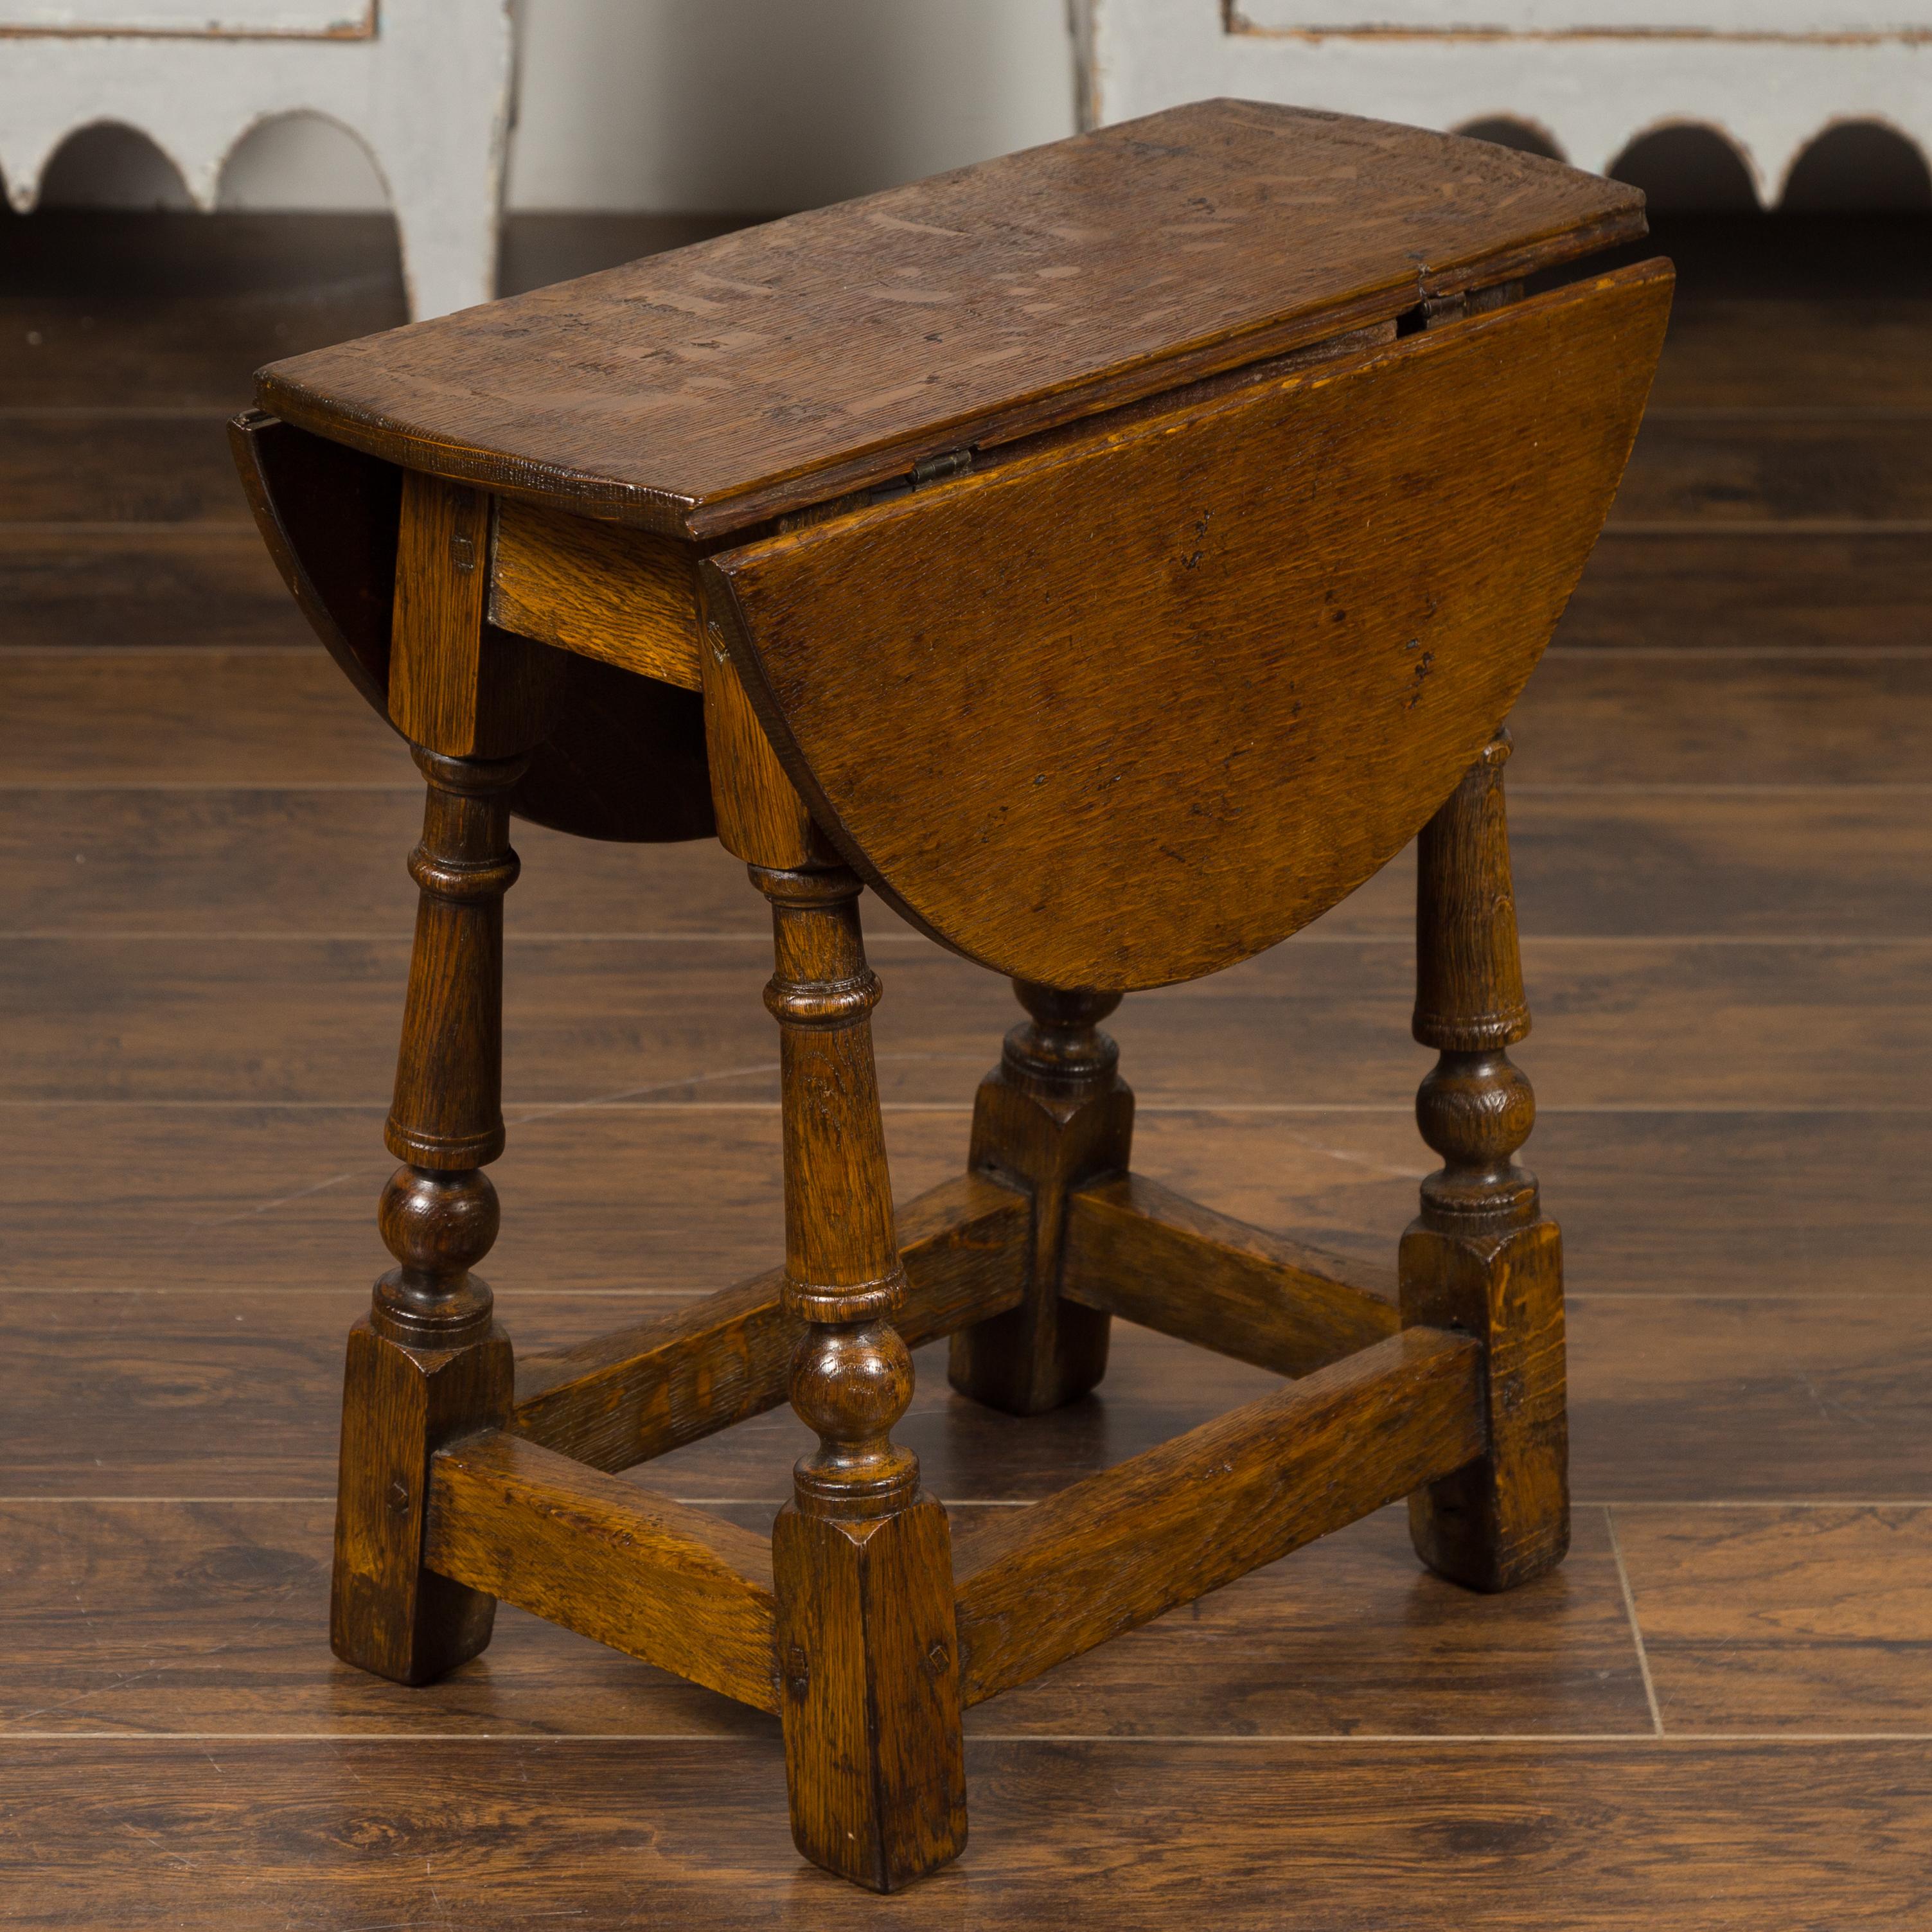 Kleiner englischer Eichenholztisch aus dem späten 19. Jahrhundert mit gedrechselten Beinen und seitlichen Streckern. Dieser Beistelltisch aus Eichenholz, der in den späten Jahren des 19. Jahrhunderts in England entstand, verfügt über zwei